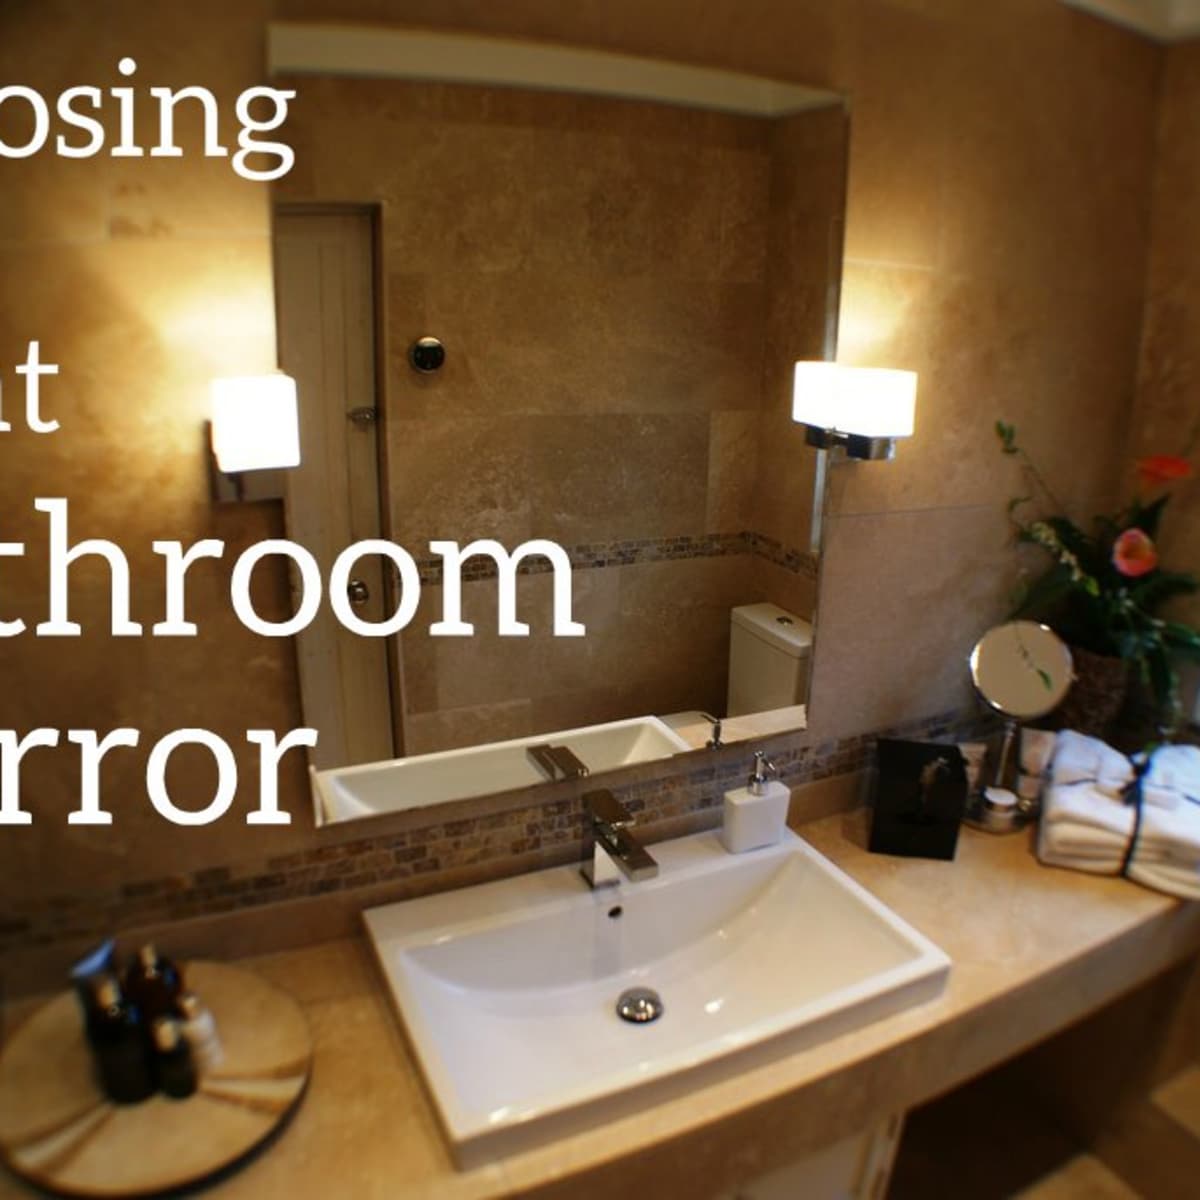 Mirror Above Your Bathroom Vanity, Standard Bathroom Vanity Light Height